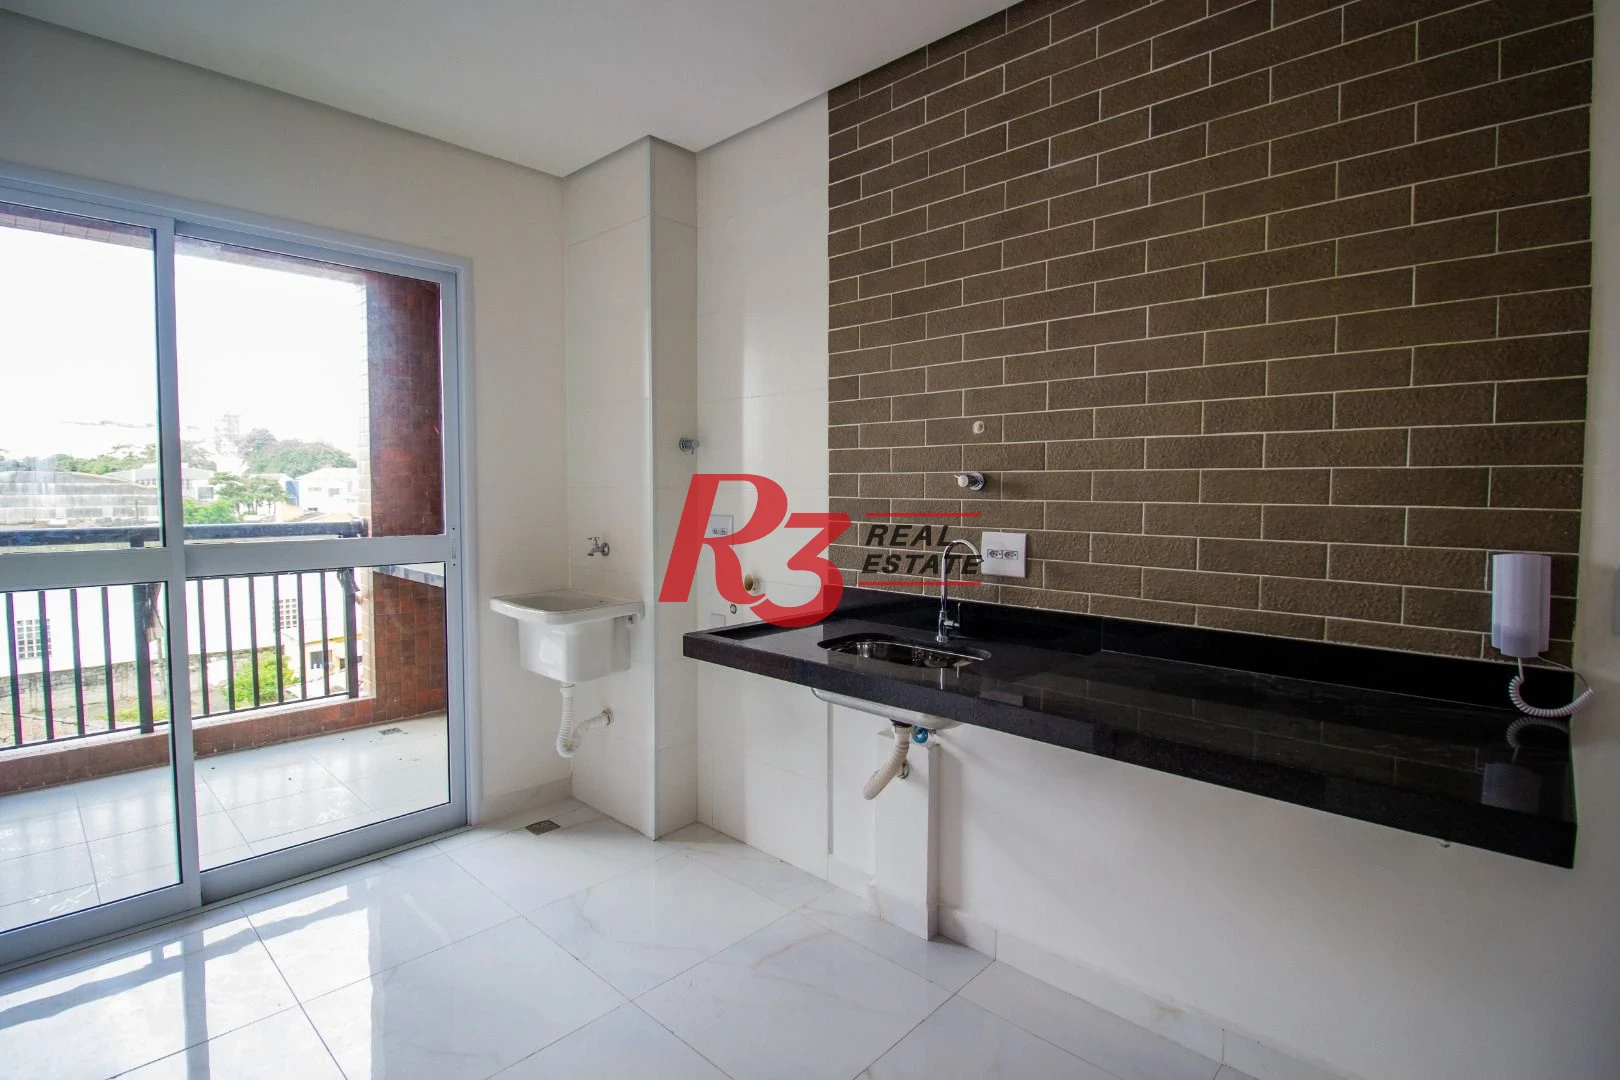 Apartamento com 1 dormitório à venda, 41 m² por R$ 350.000,00 - Aparecida - Santos/SP